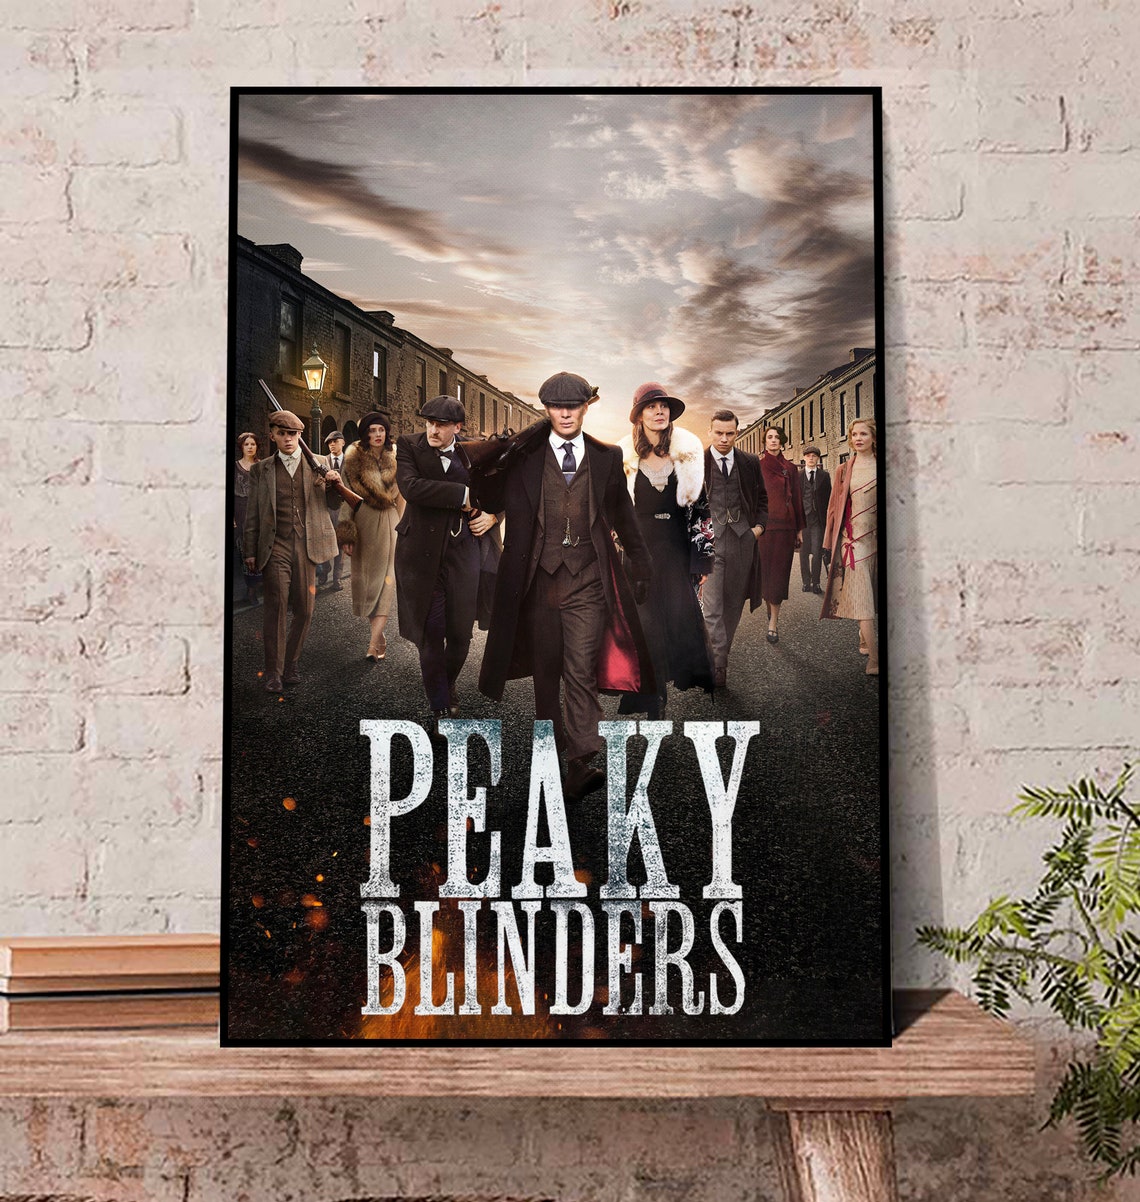 Peaky Blinders season 6 Poster, Peaky Blinders Vintage Poster, Peaky Blinders Wall Art Print, Peaky Blinders Retro Poster